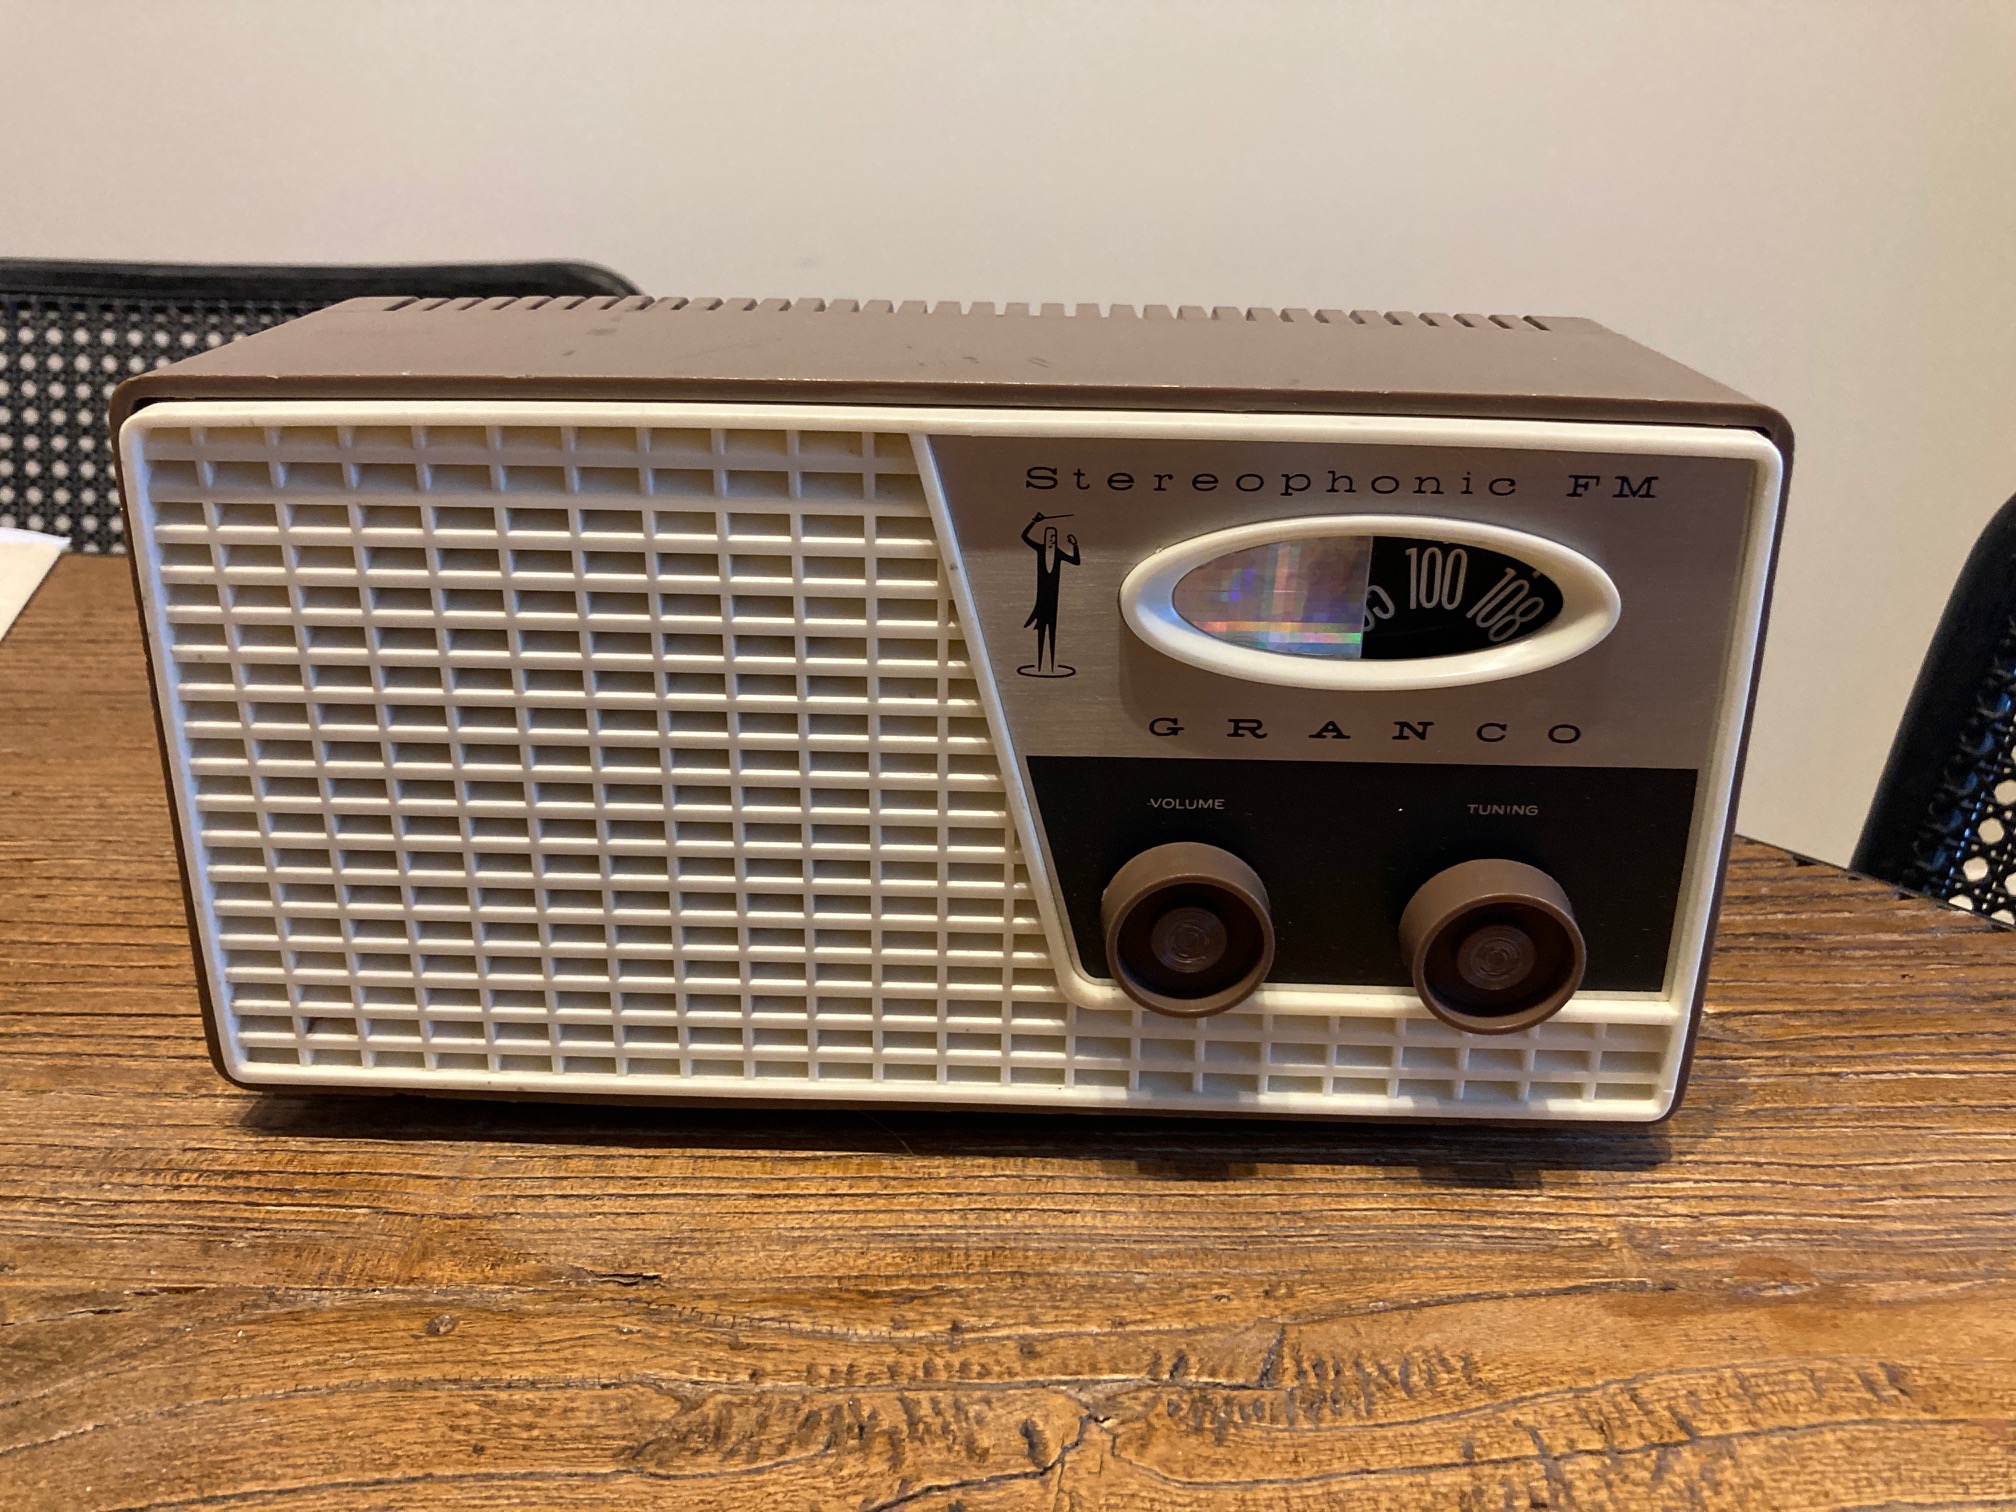 1962 Granco 603 AM/FM